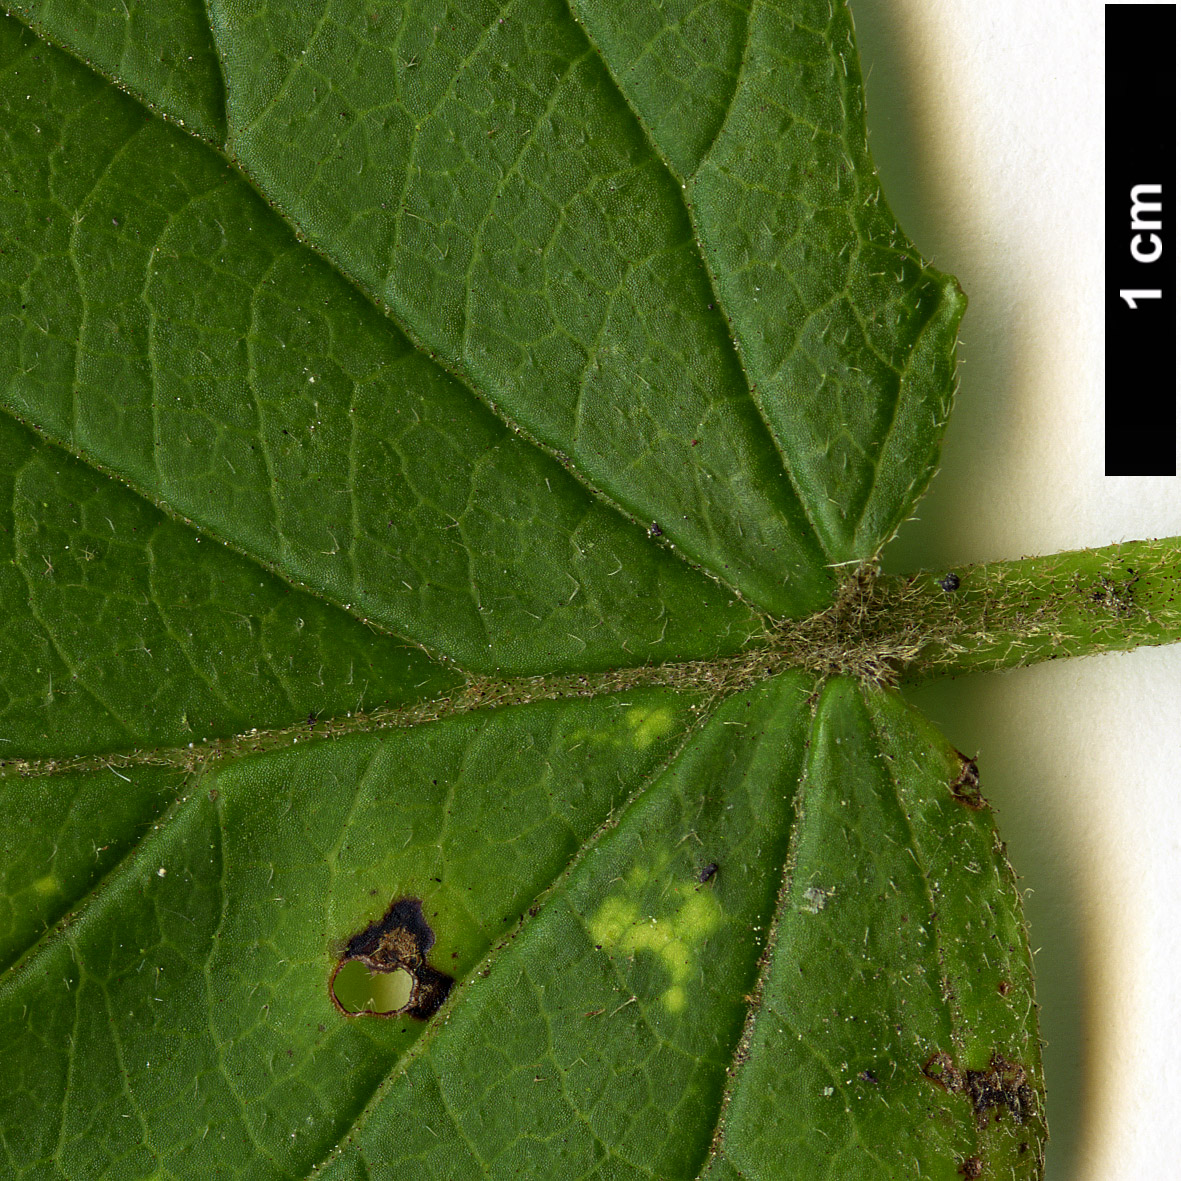 High resolution image: Family: Adoxaceae - Genus: Viburnum - Taxon: dentatum - SpeciesSub: var. pubescens